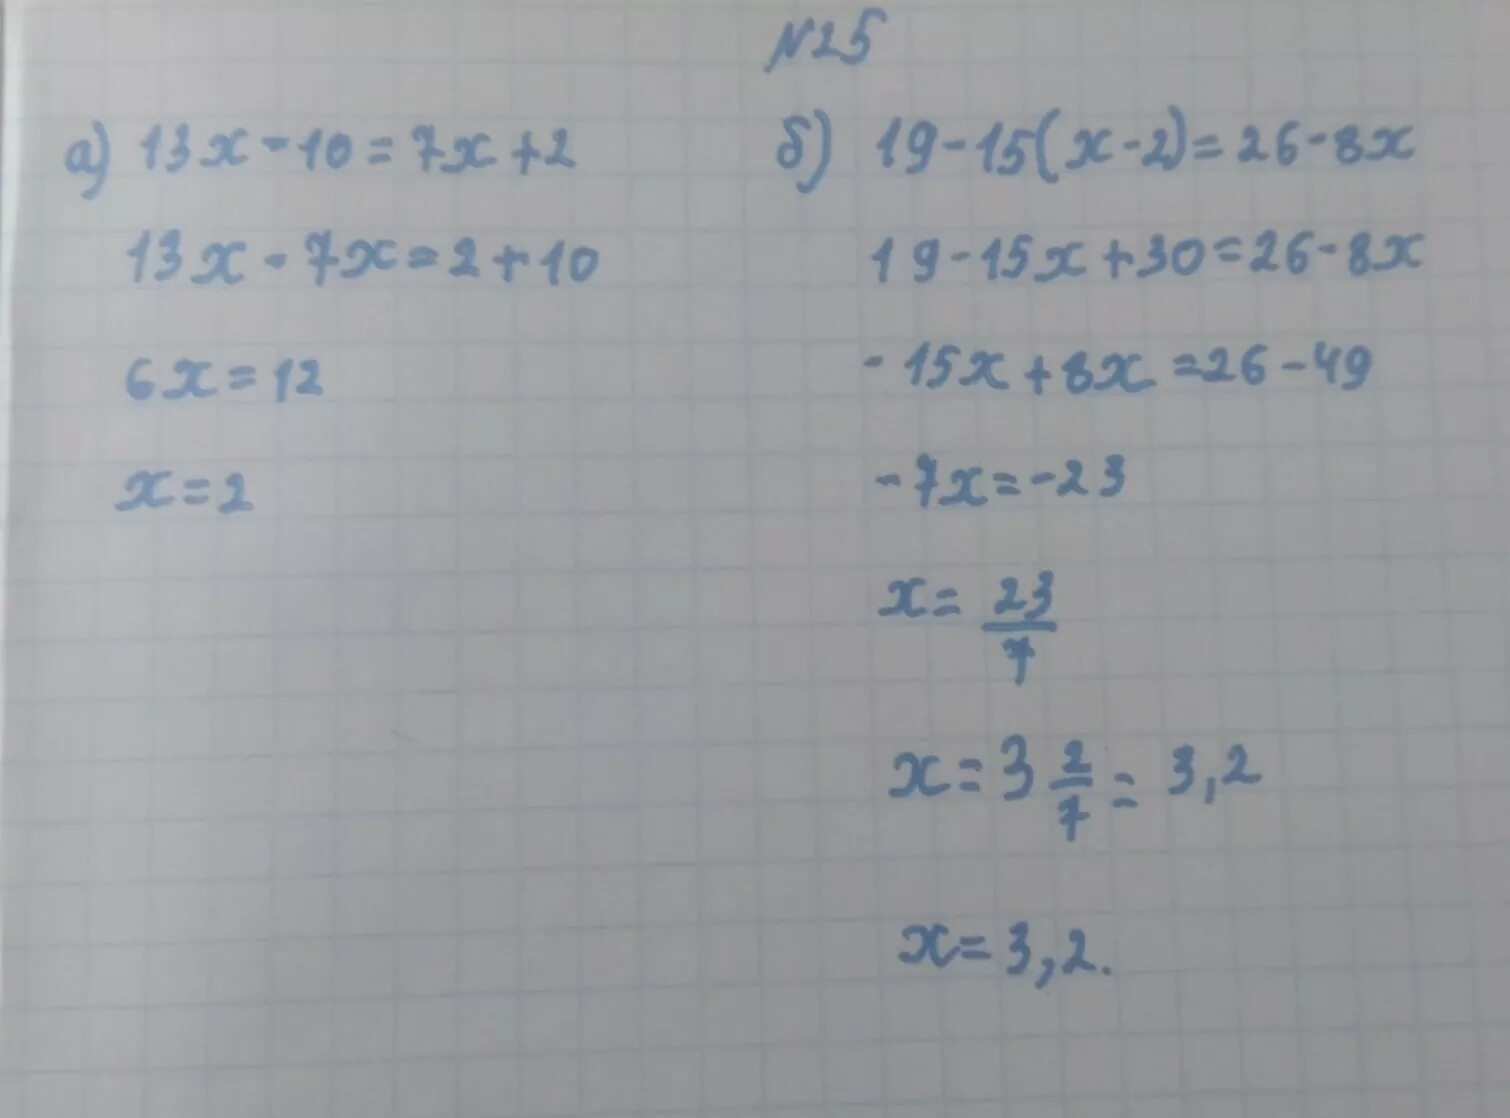 13 X 2 2 X 13 2. (13-Х)(13-X) решение. 13x-26=130 решение. 13х-26 -130 решить. 10 3 7 2x 13 2x